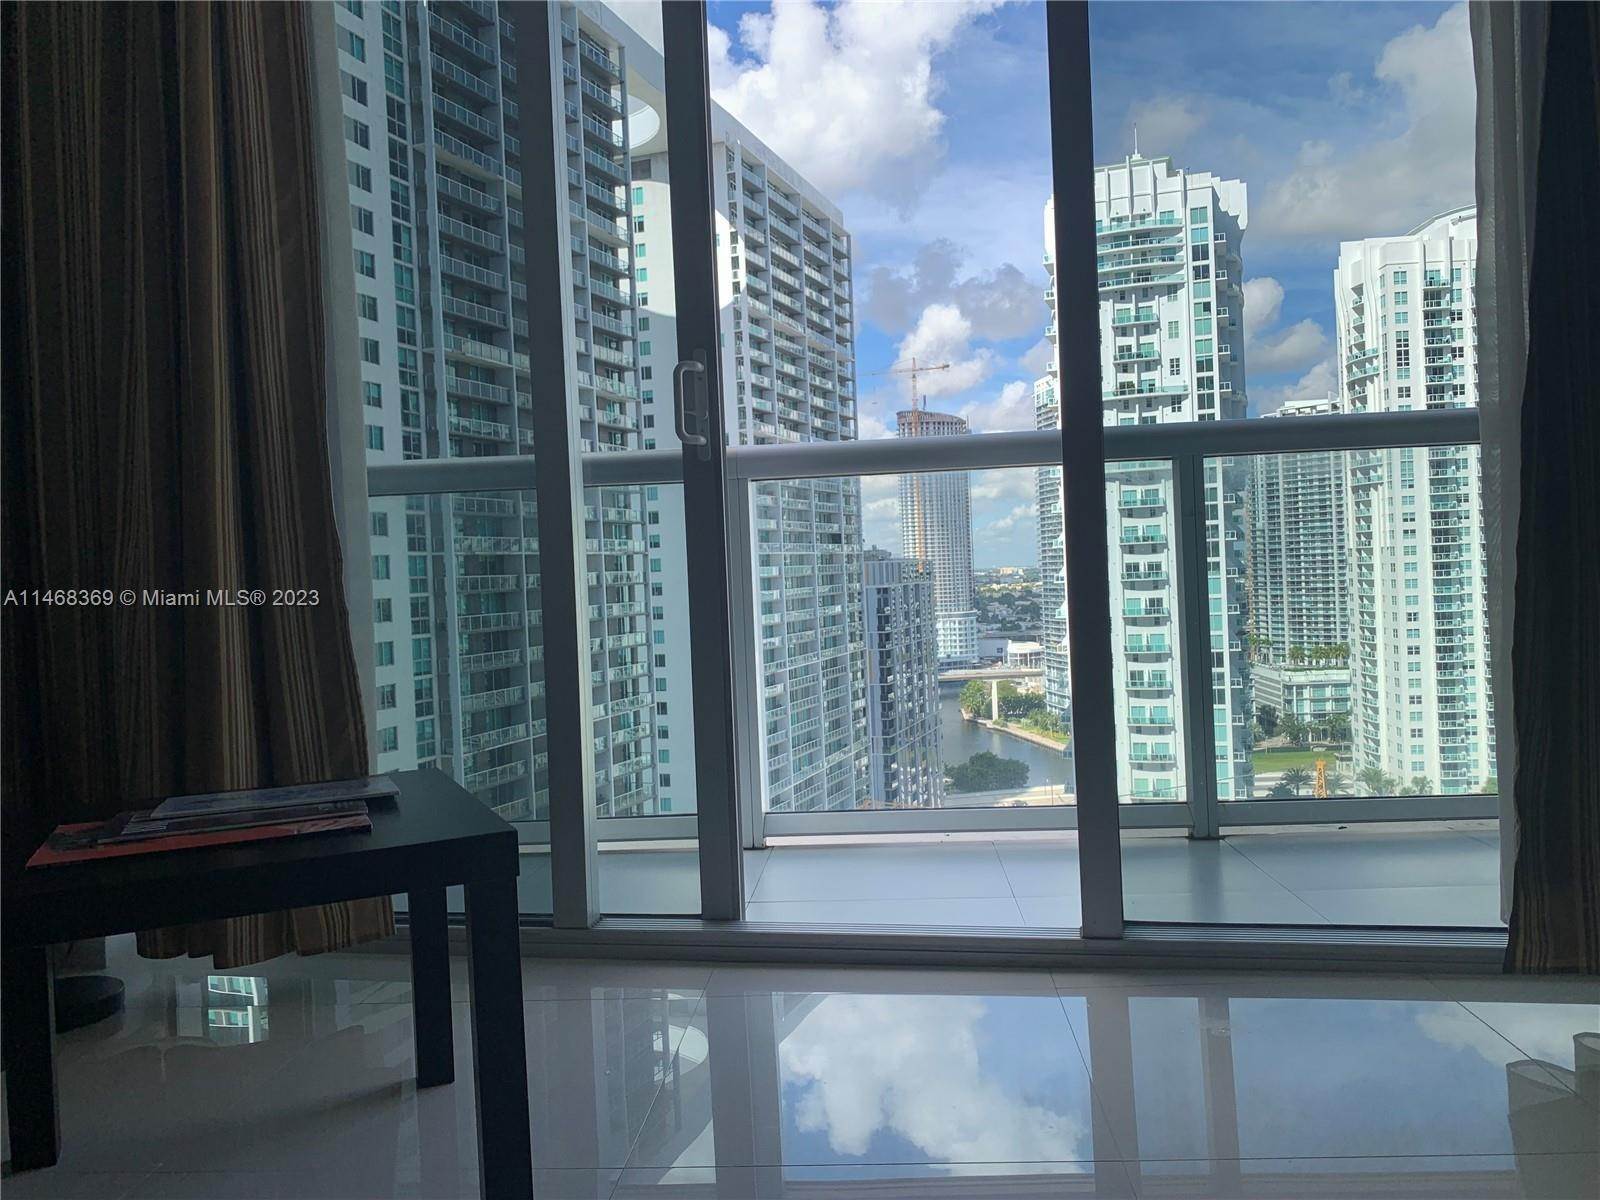 Condominiums at Downtown Miami, Miami, FL 33131